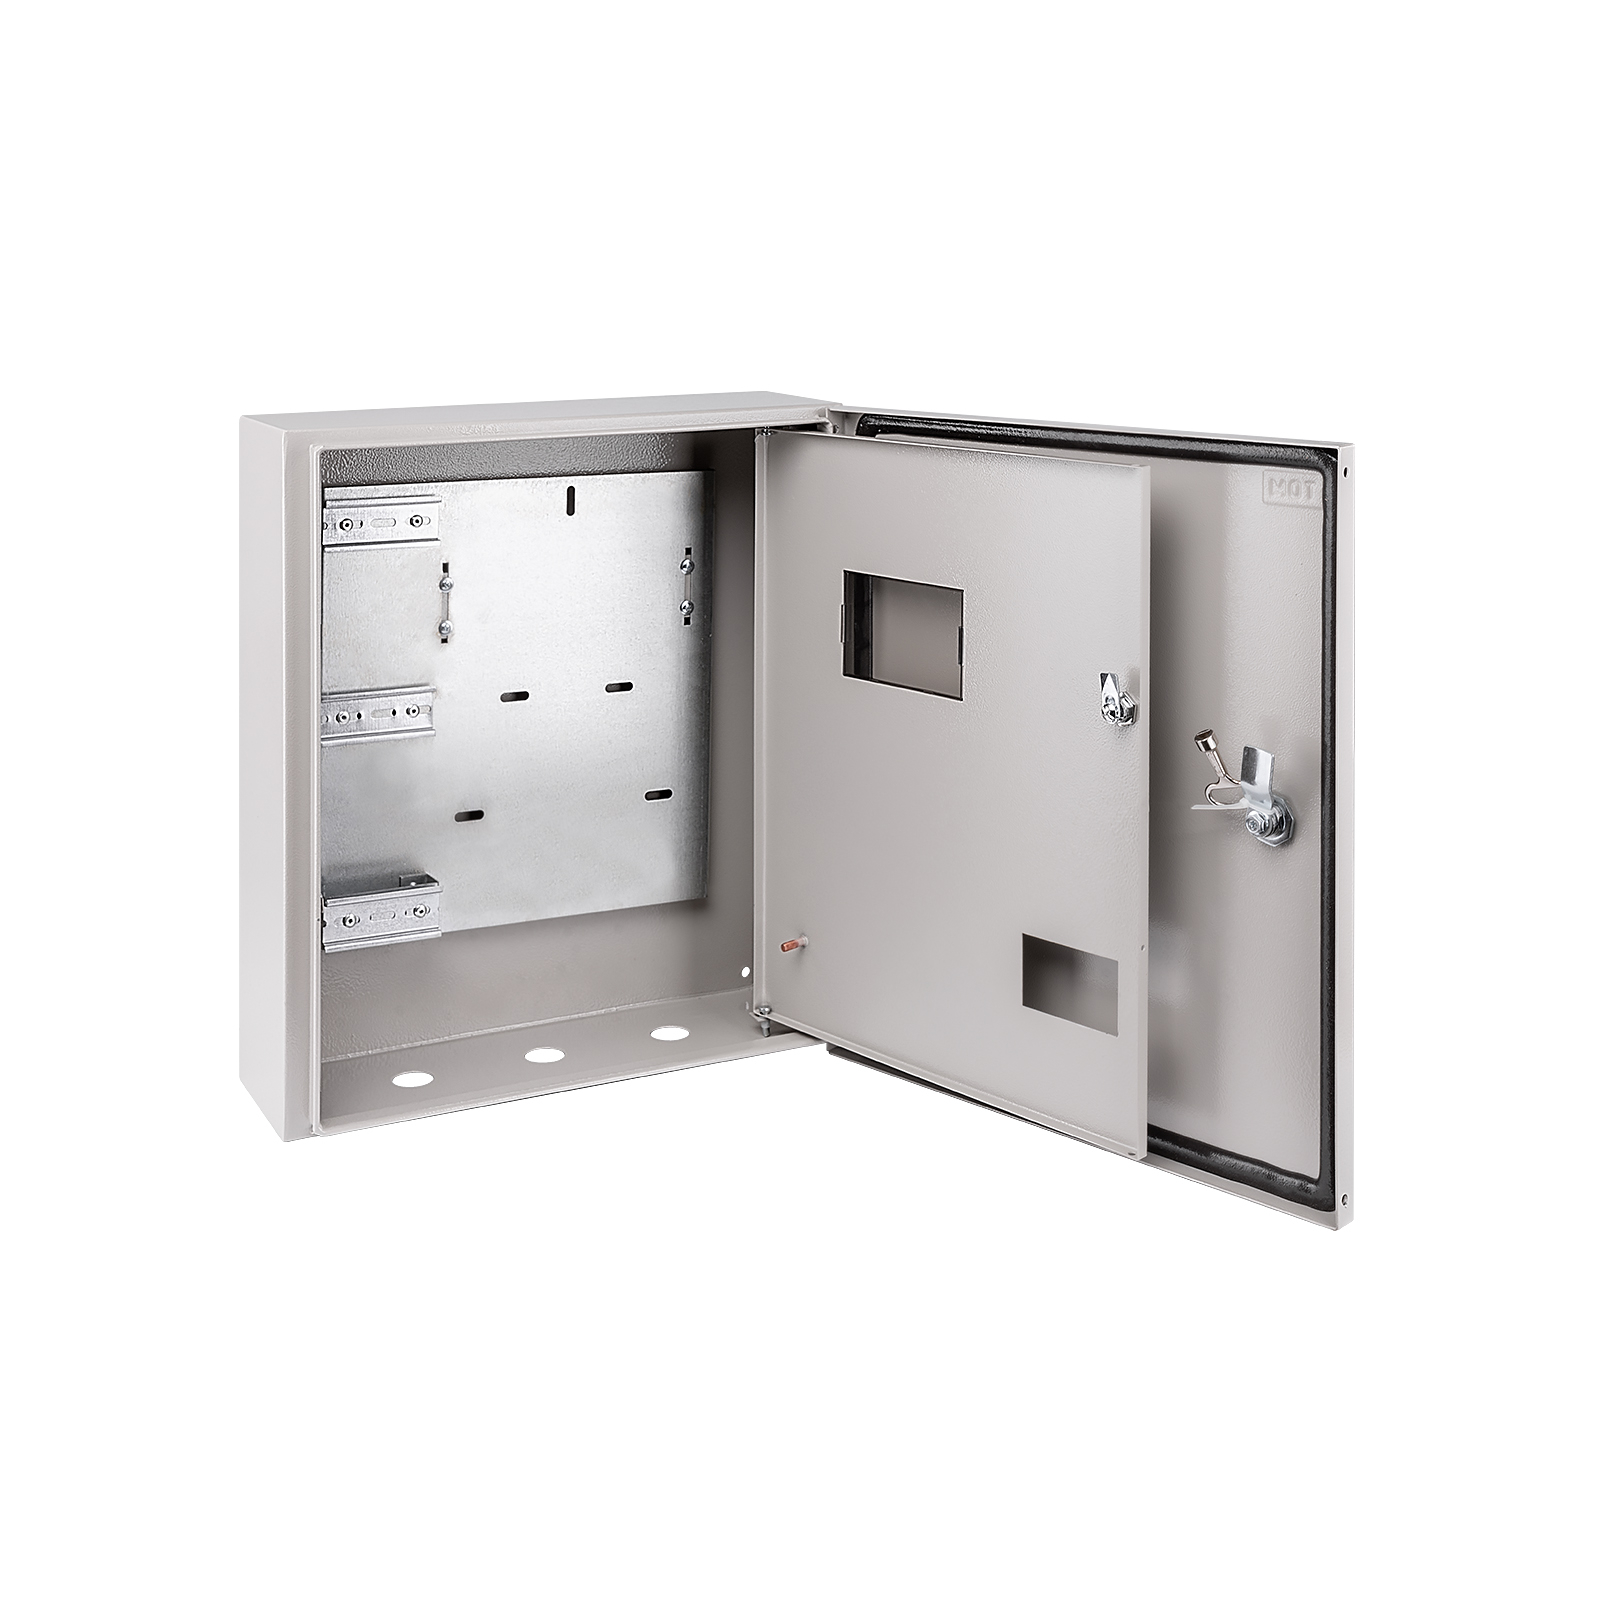 Электротехнический распределительный шкаф ip66 навесной в400 ш400 г210 emw c одной дверью